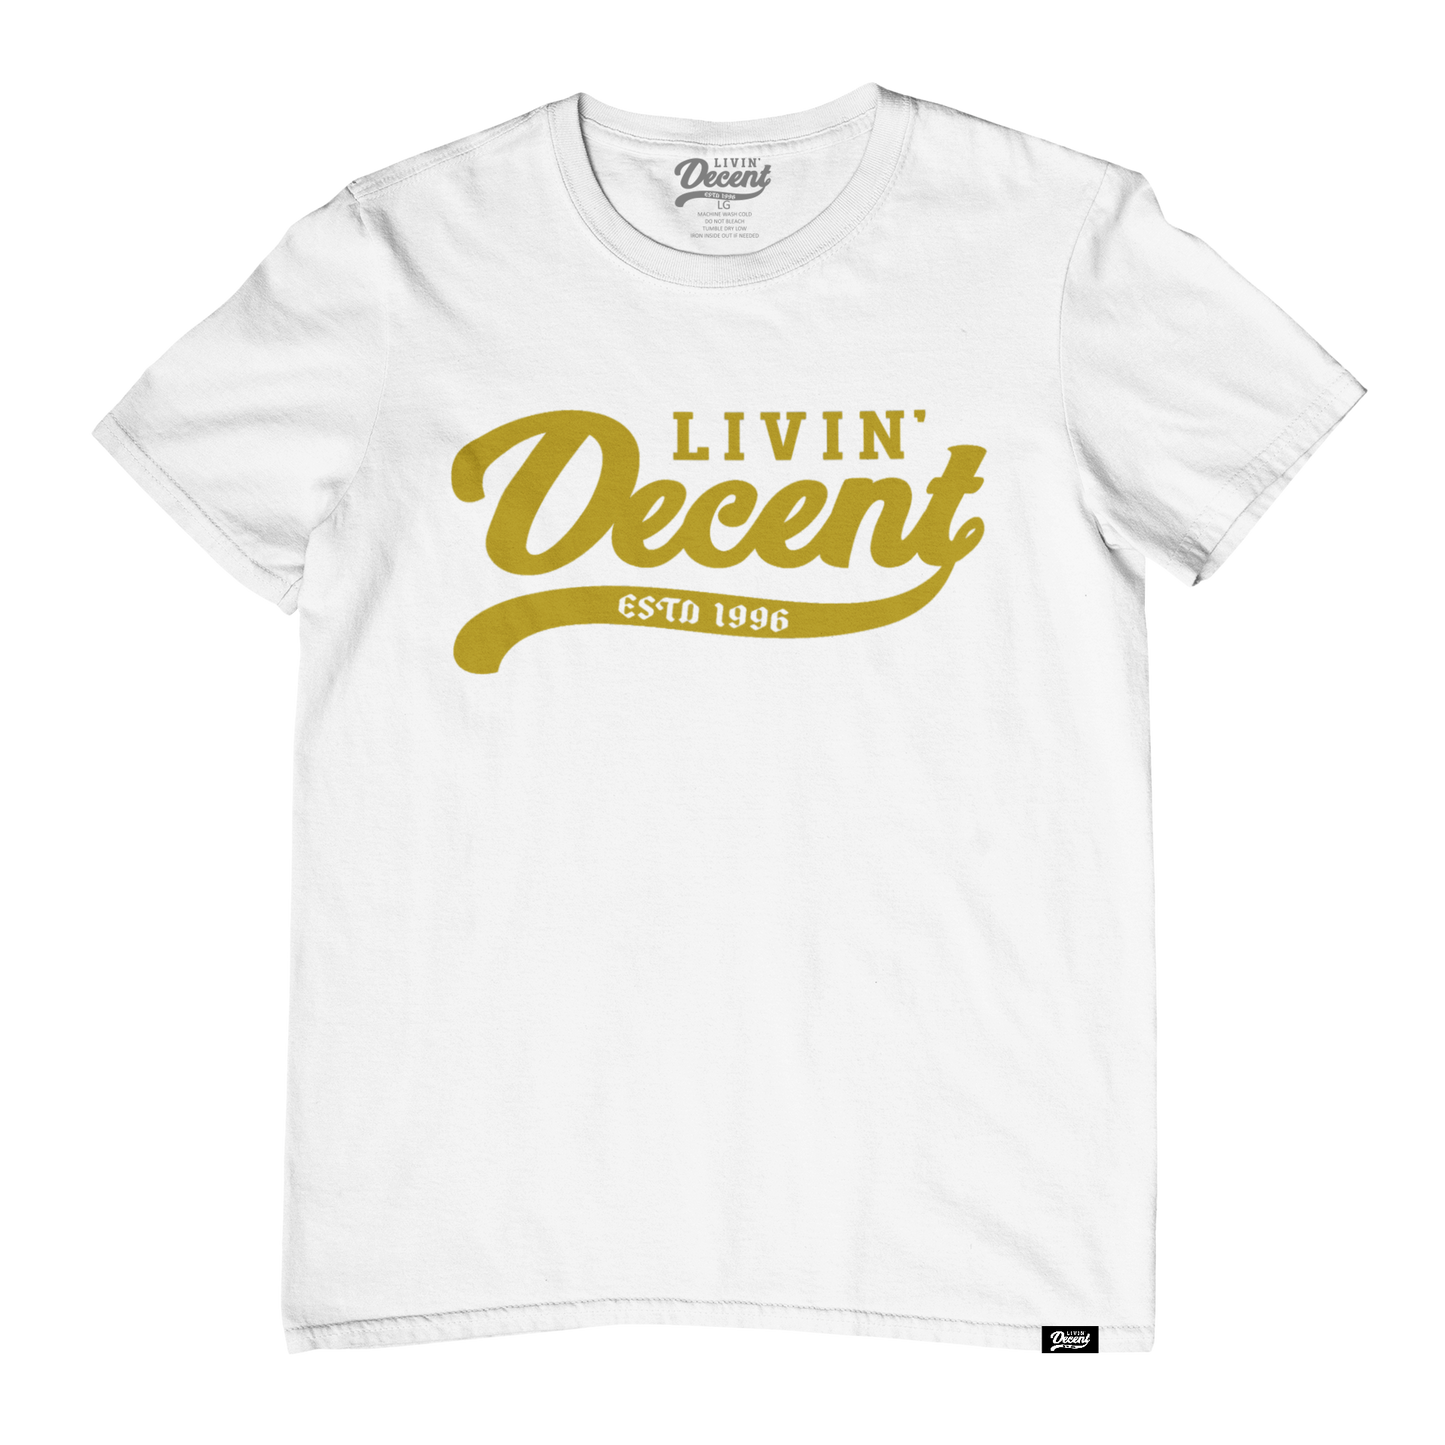 Livin Decent Original T-Shirt